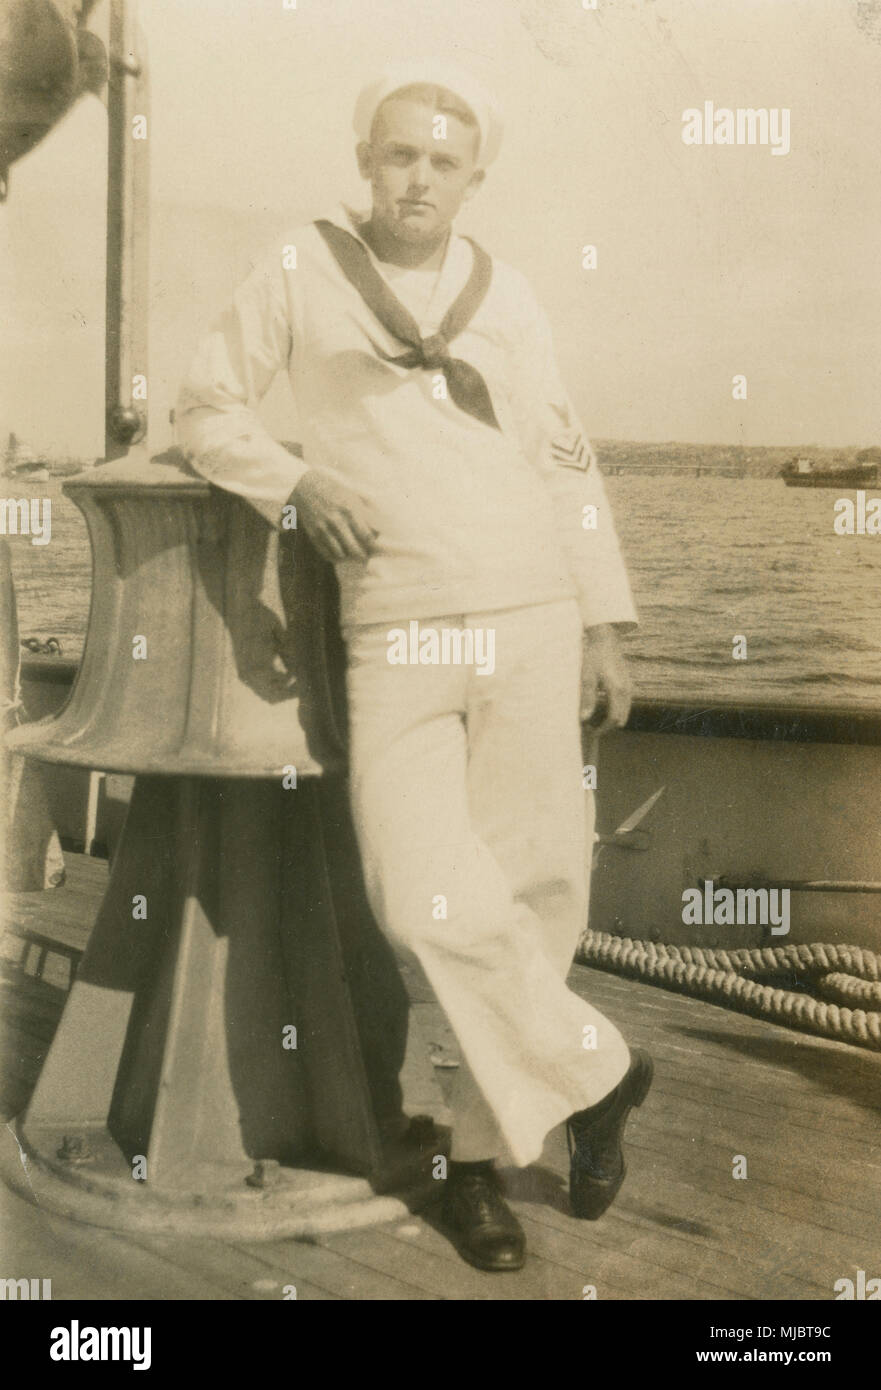 Antike c 1922 Foto, Aussicht an Bord der Kabel-ship USCG Pequot. Ein Seemann in einem US Coast Guard Kleid weiße Uniform, stützte sich auf das, was die große elektrische Ankerwinde auf dem Deck. Quelle: ORIGINAL FOTOABZUG. Stockfoto